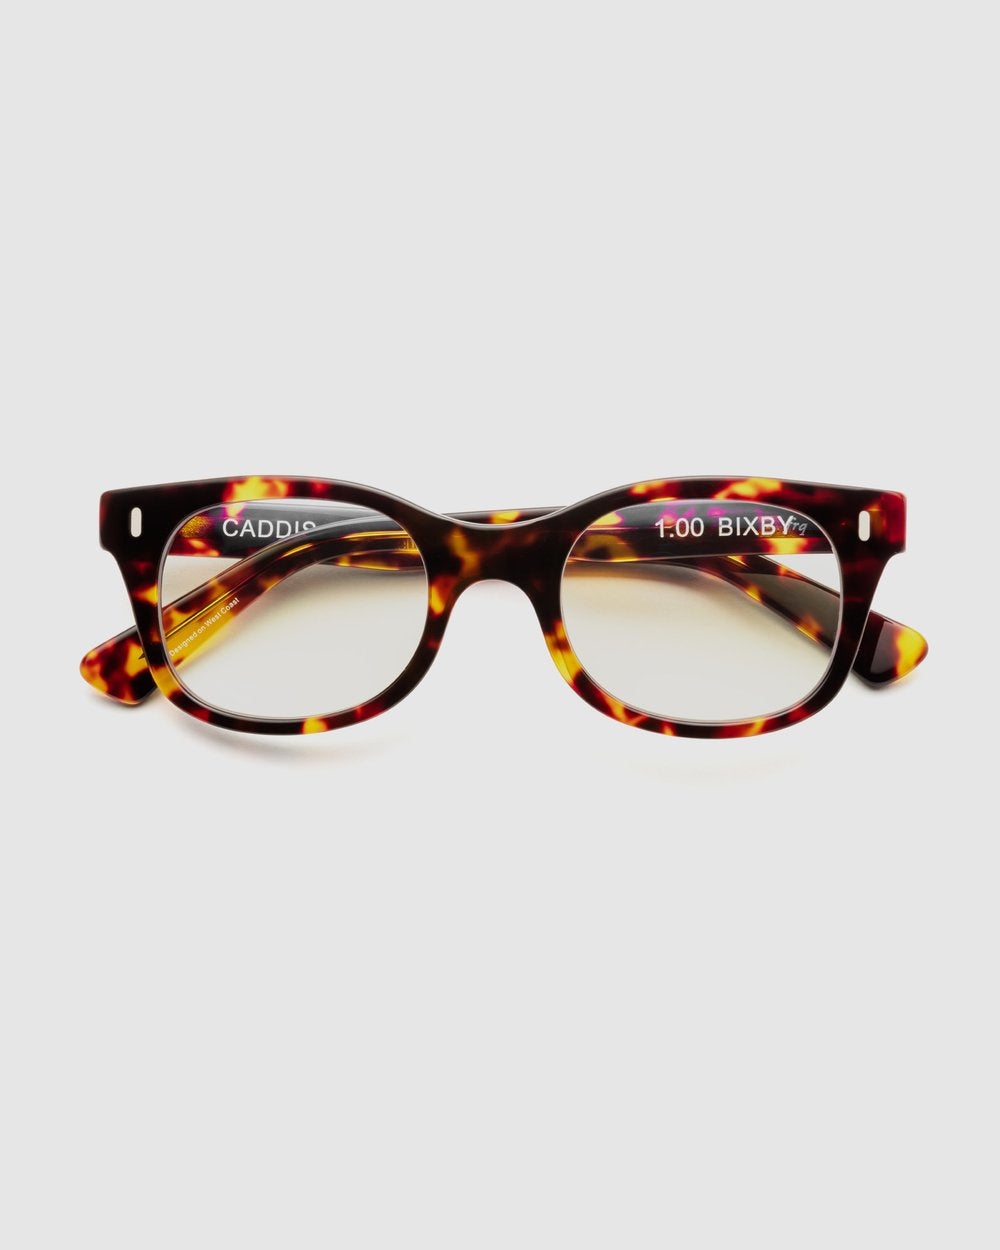 Caddis: Bixby Glasses